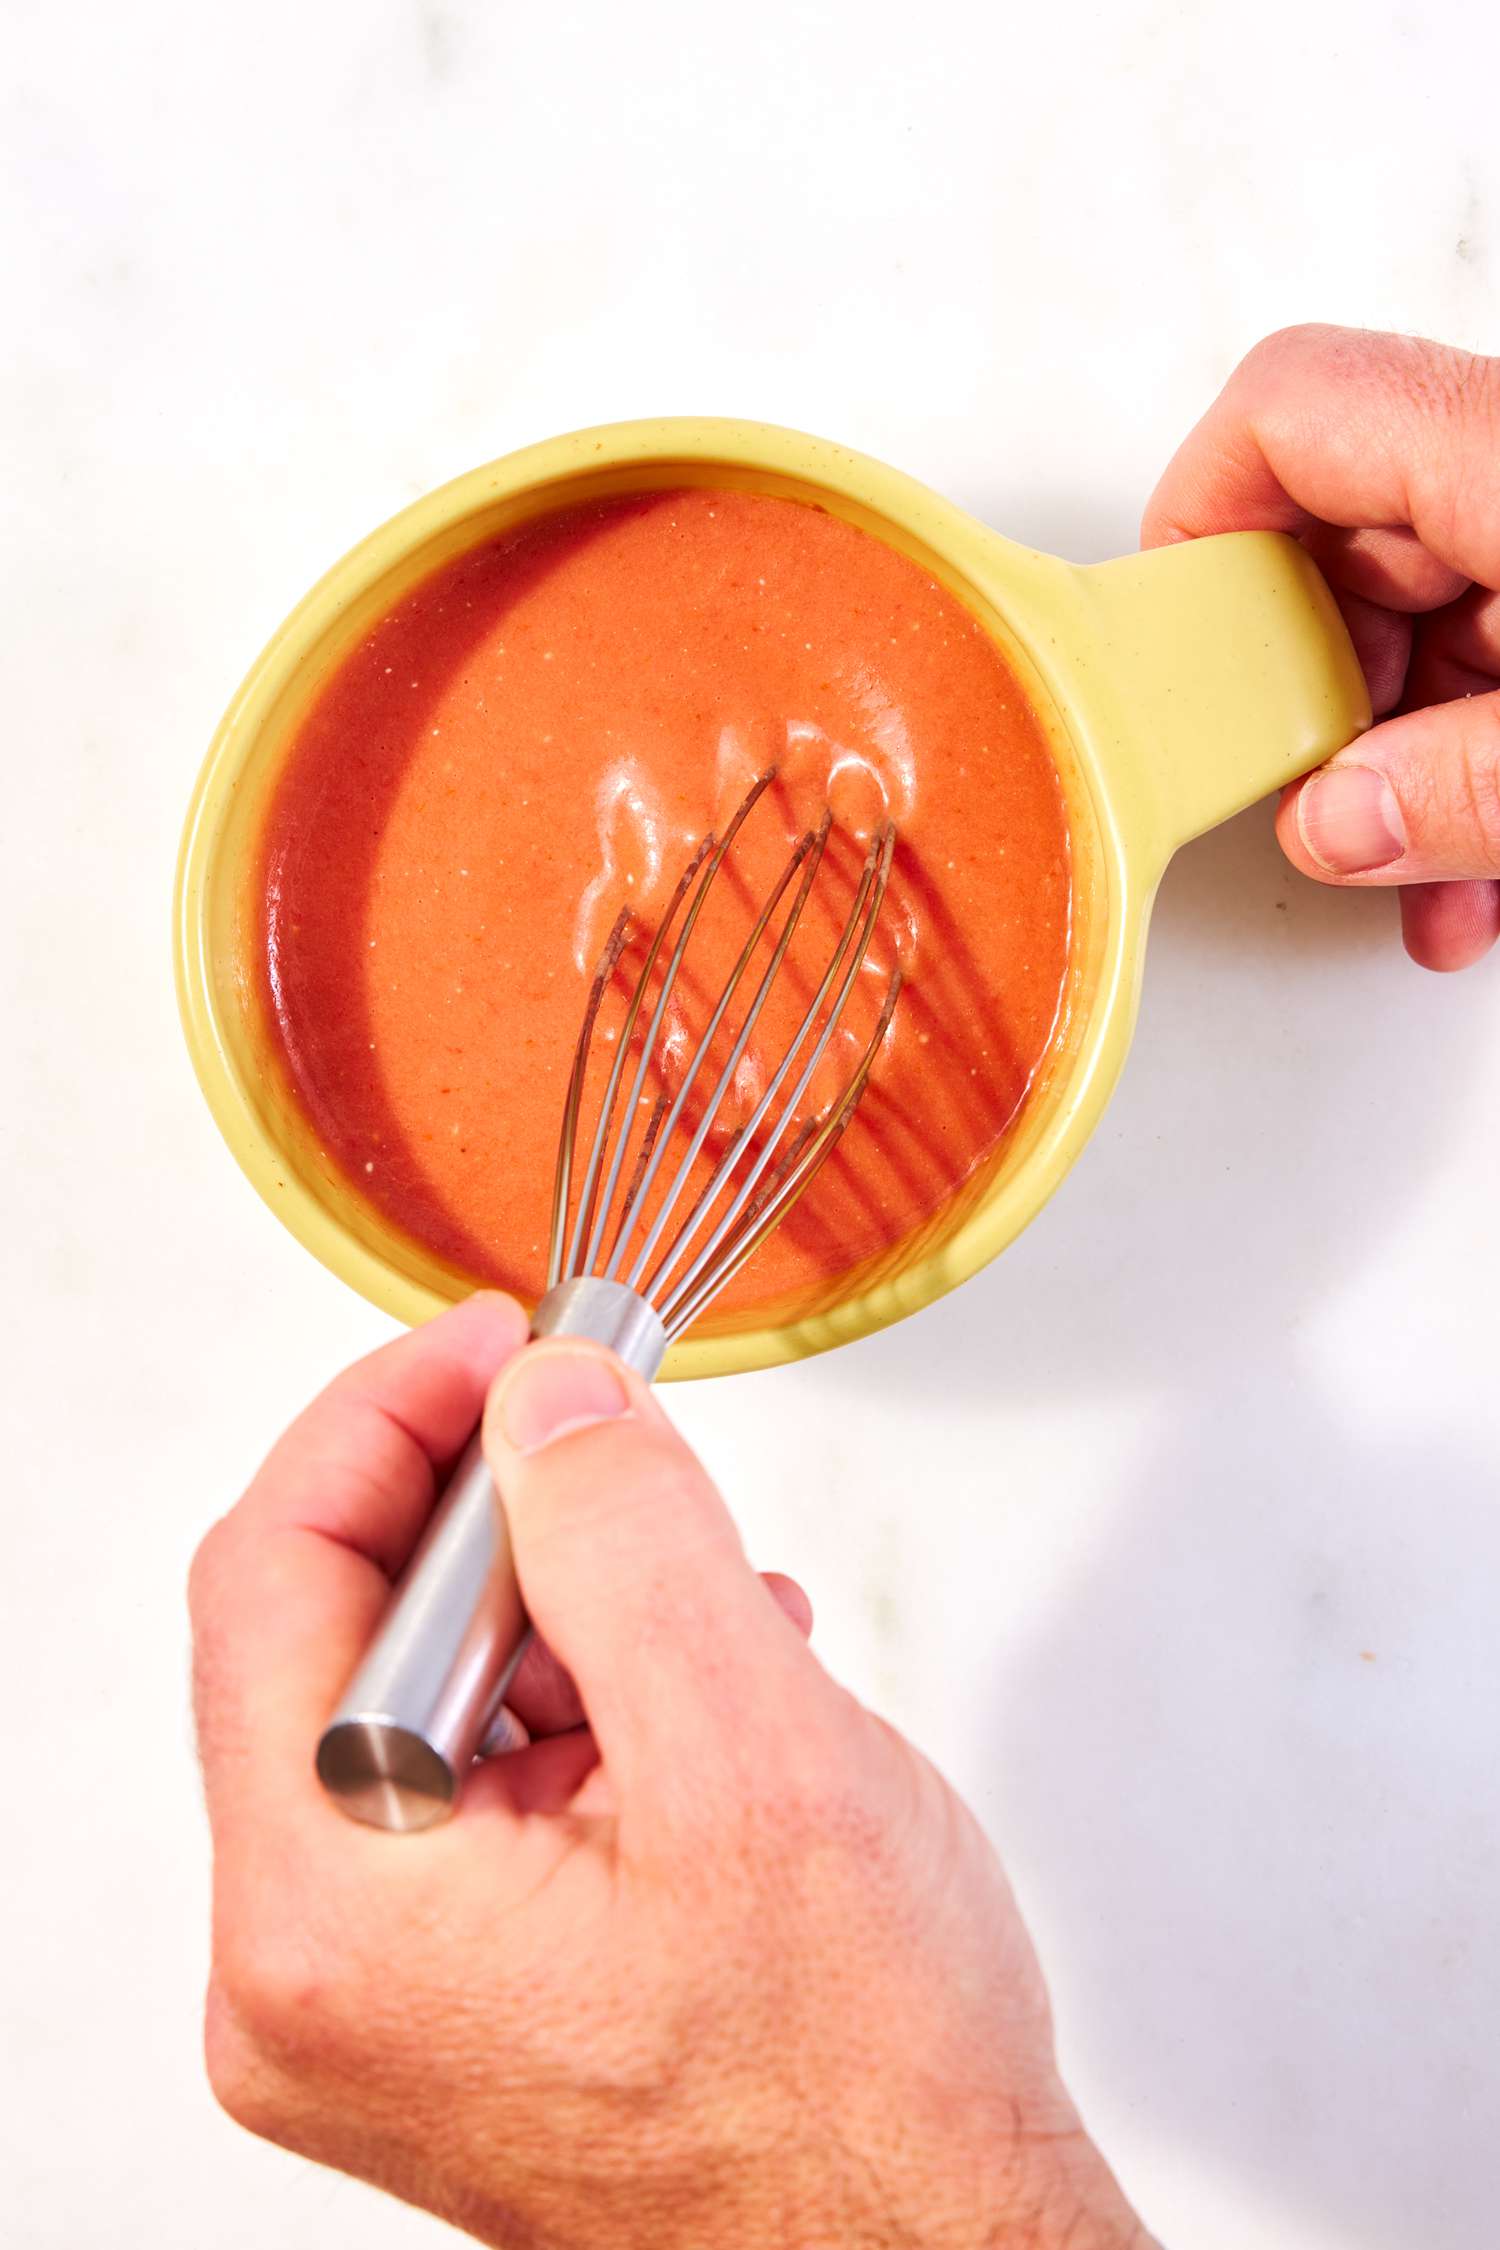 Photo < Span> Calorie 105 de la persona que pone los ingredientes de la sopa de taza de matón cremosa rápida en una taza